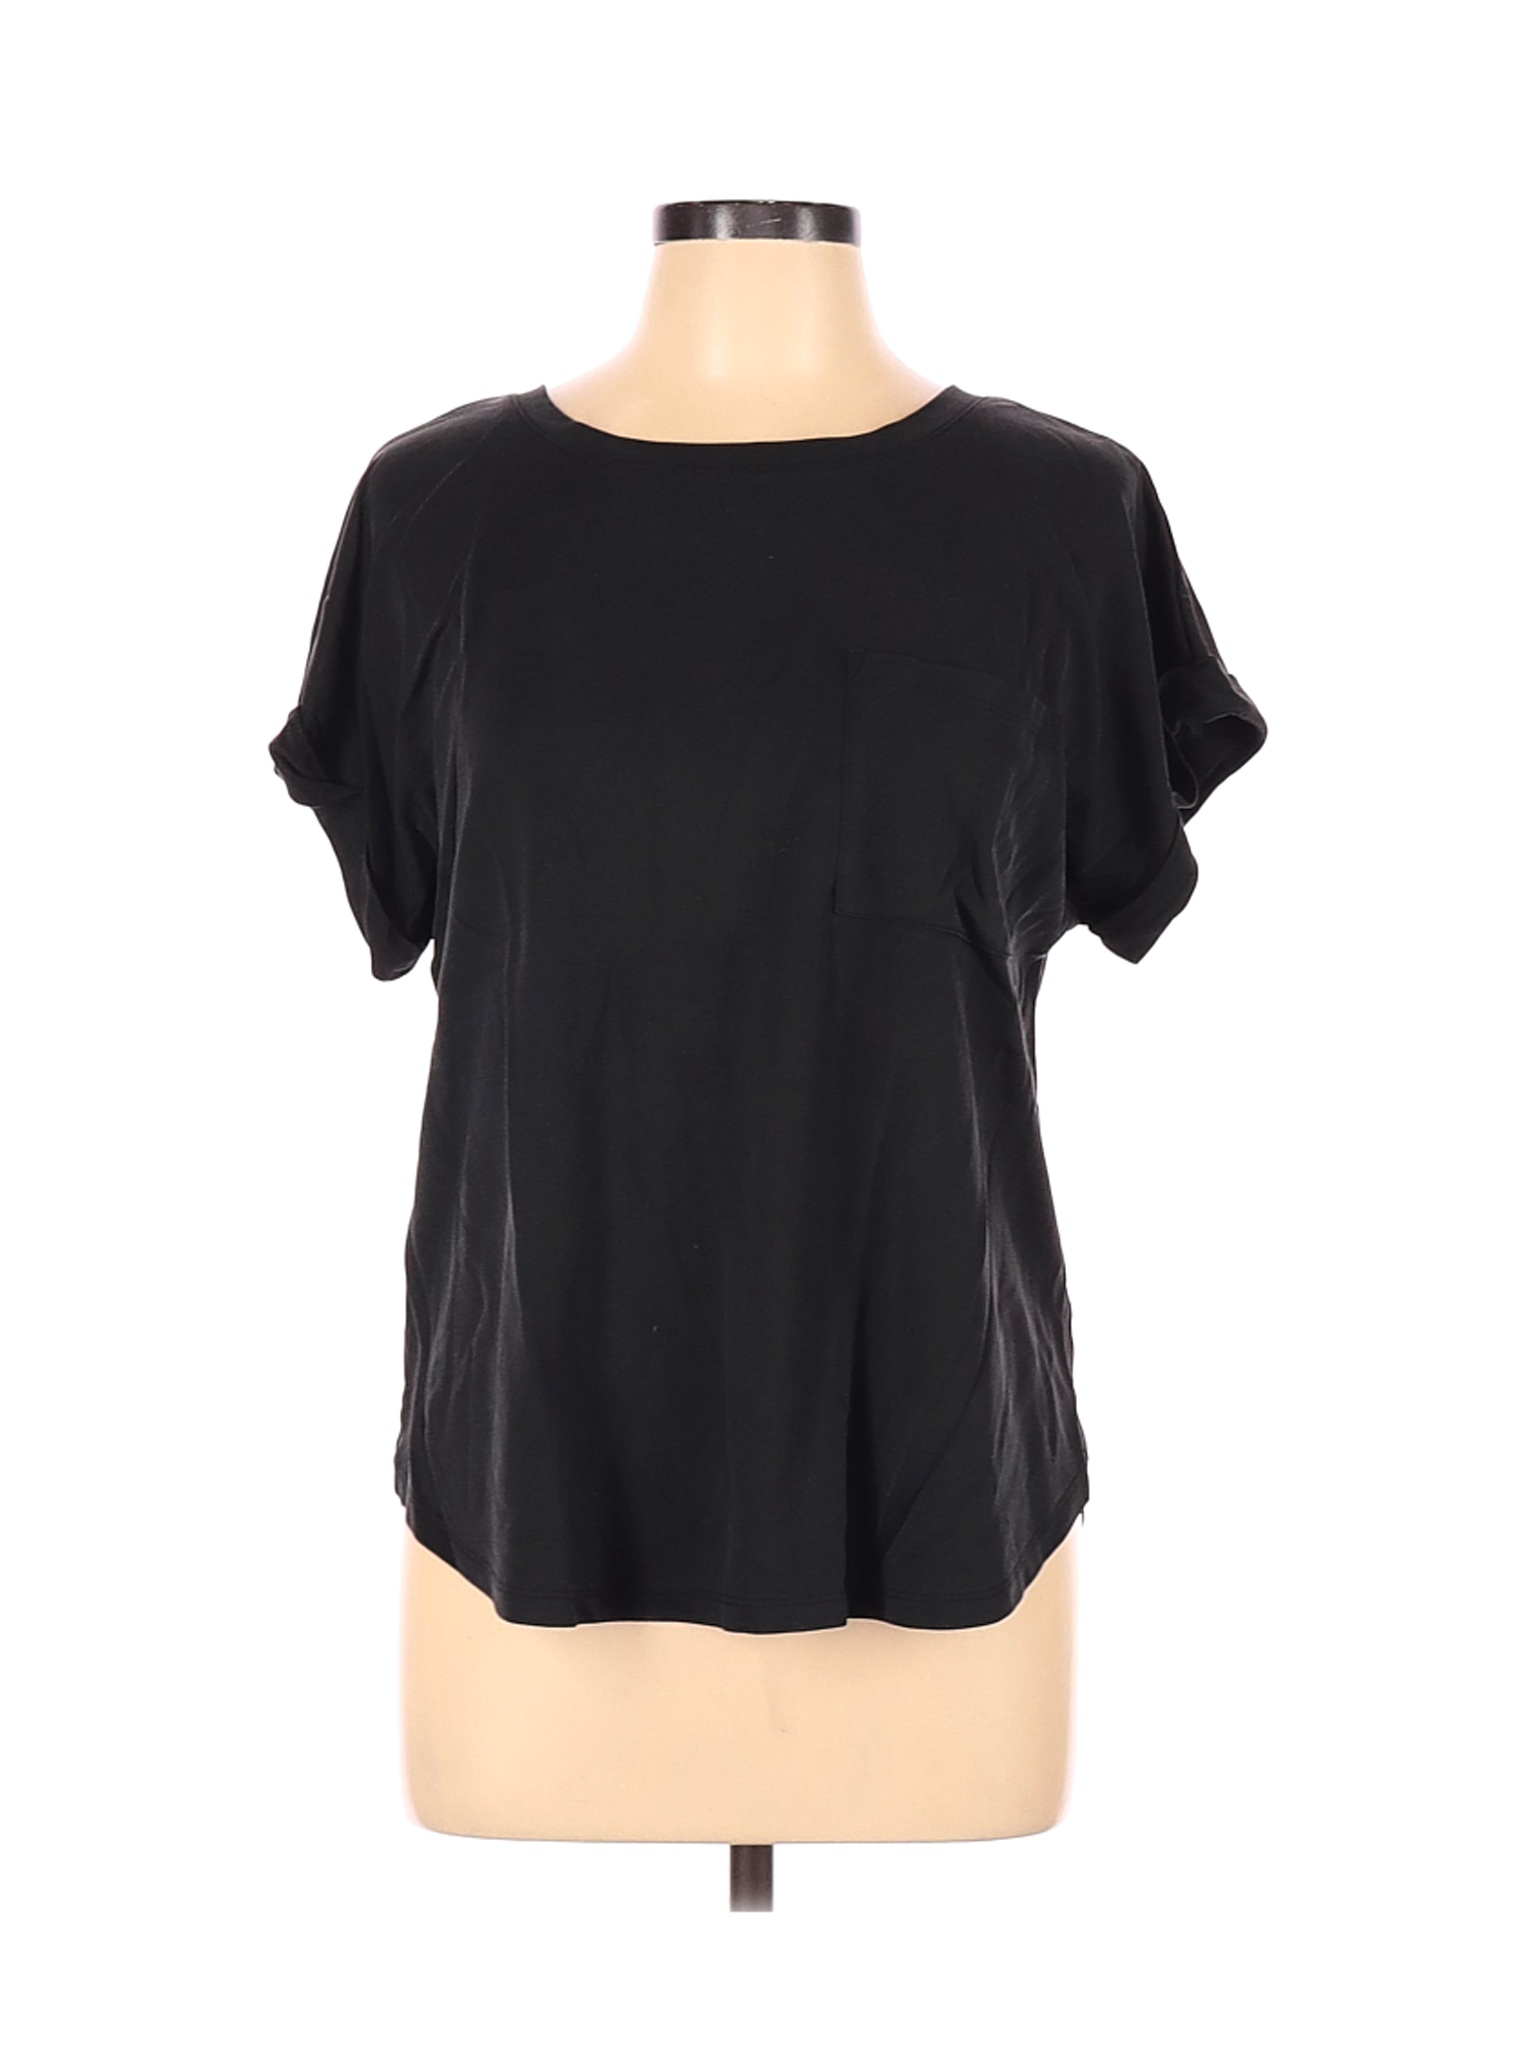 A New Day Women Black Short Sleeve T-Shirt XL | eBay